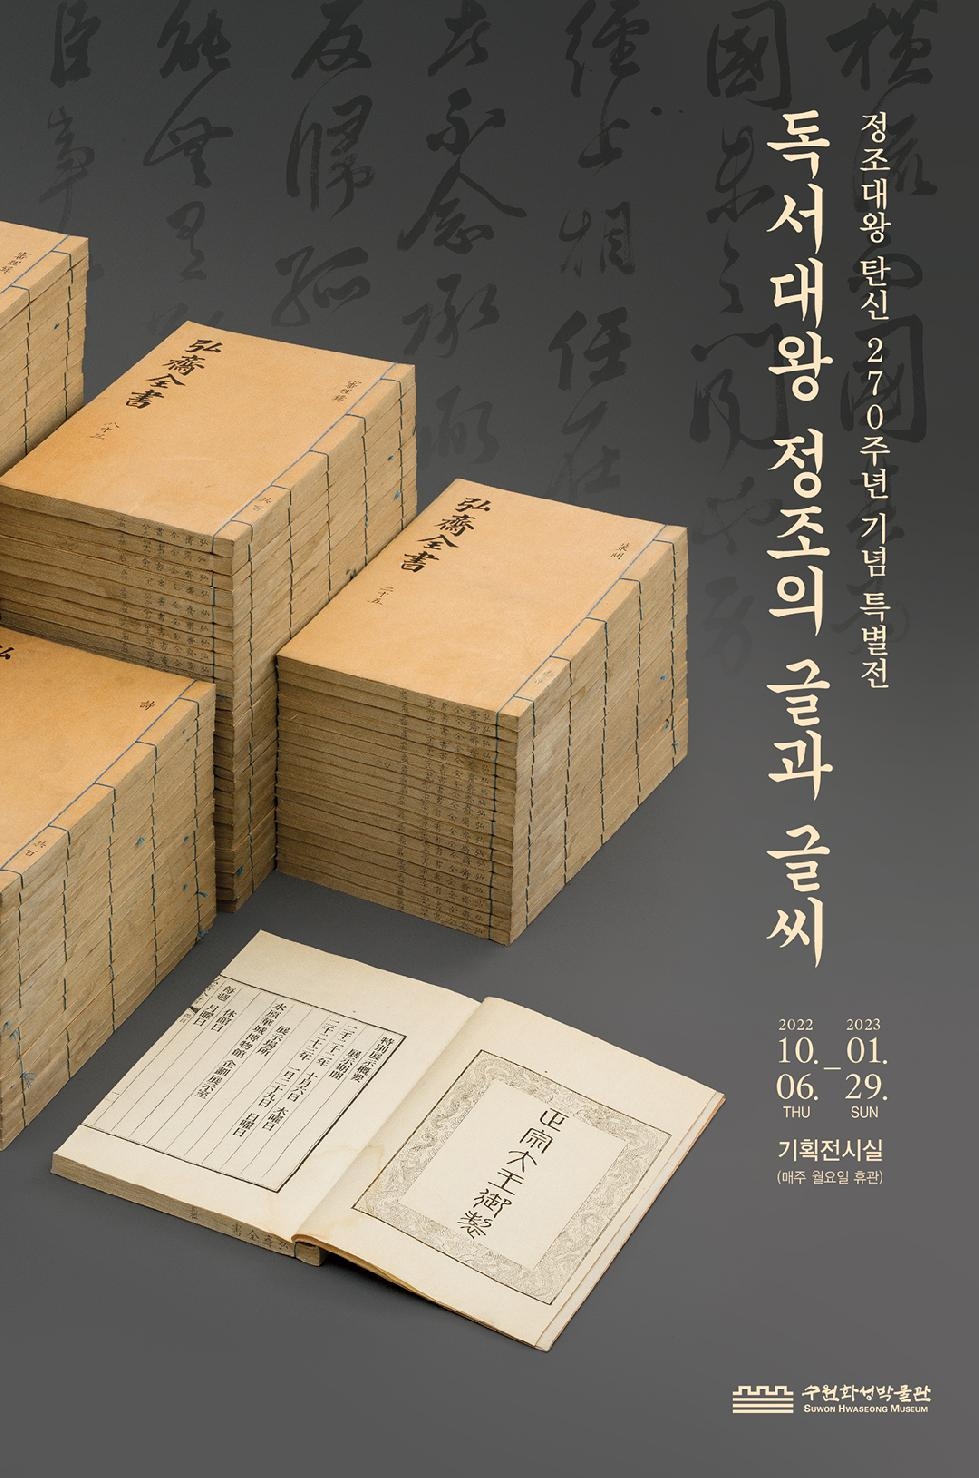 수원화성박물관, 내년 1월까지 특별전 ‘독서대왕 정조의 글과 글씨’개최